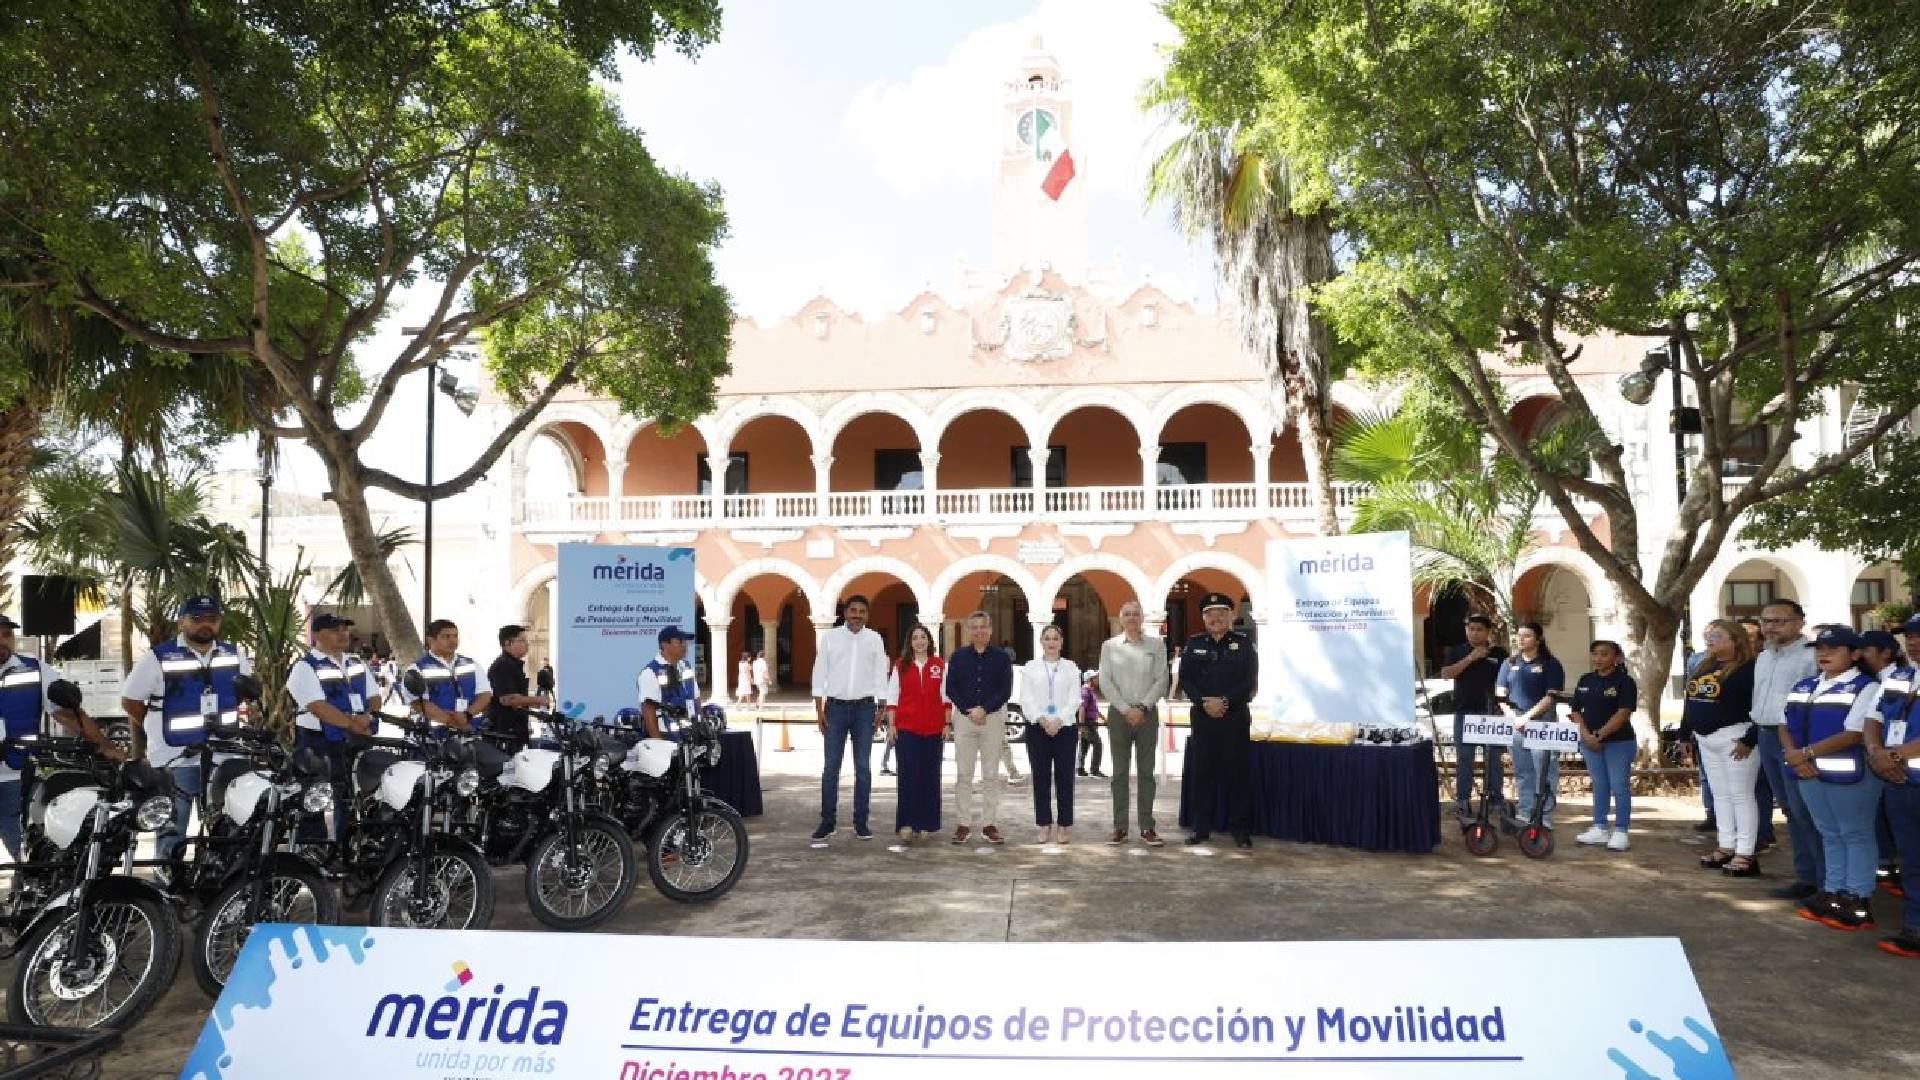 Refrenda su compromiso de contar con un actualizado y efectivo protocolo de prevención para salvaguardar a la ciudadanía: el Ayuntamiento de Mérida